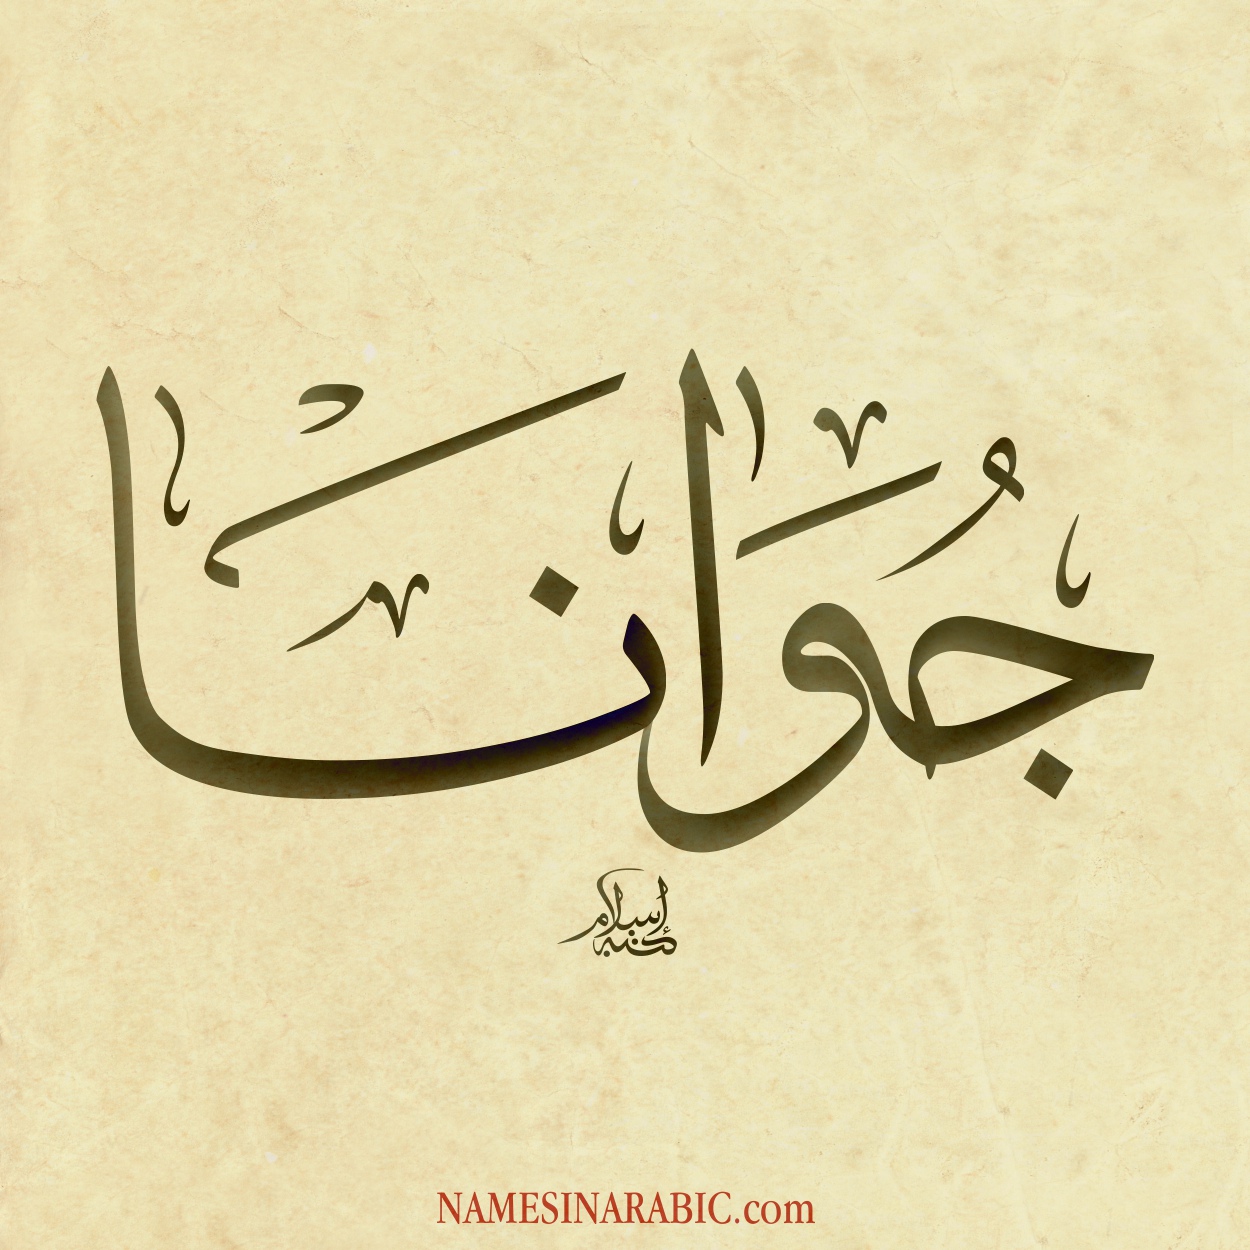 Joanna-Name-in-Arabic-Calligraphy.jpg